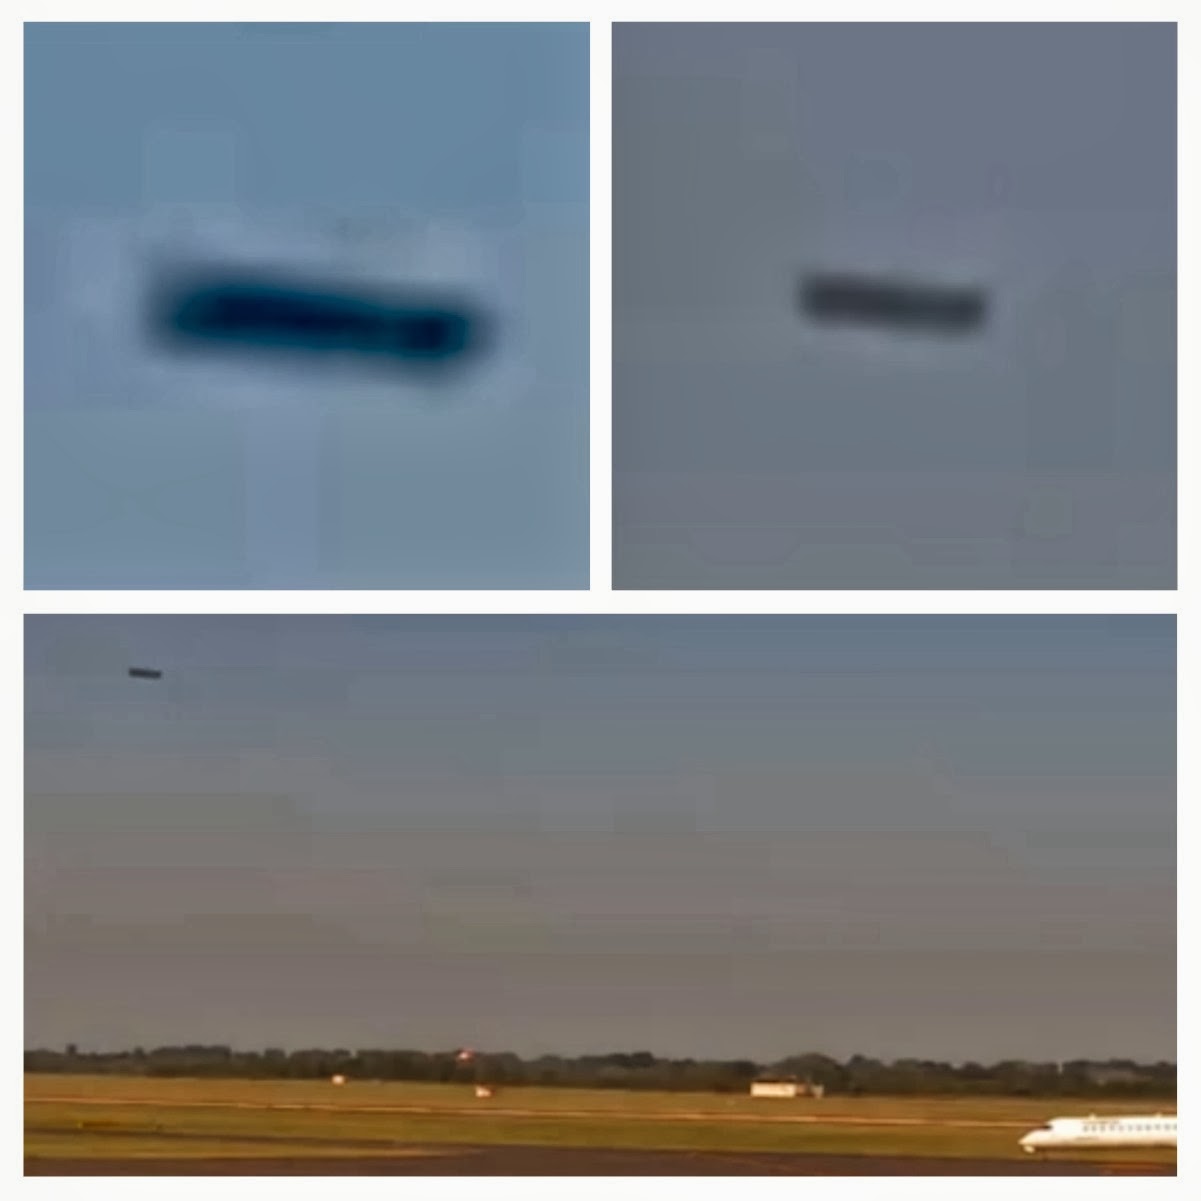 Сигарообразный НЛО пролетел над германским аэропортом